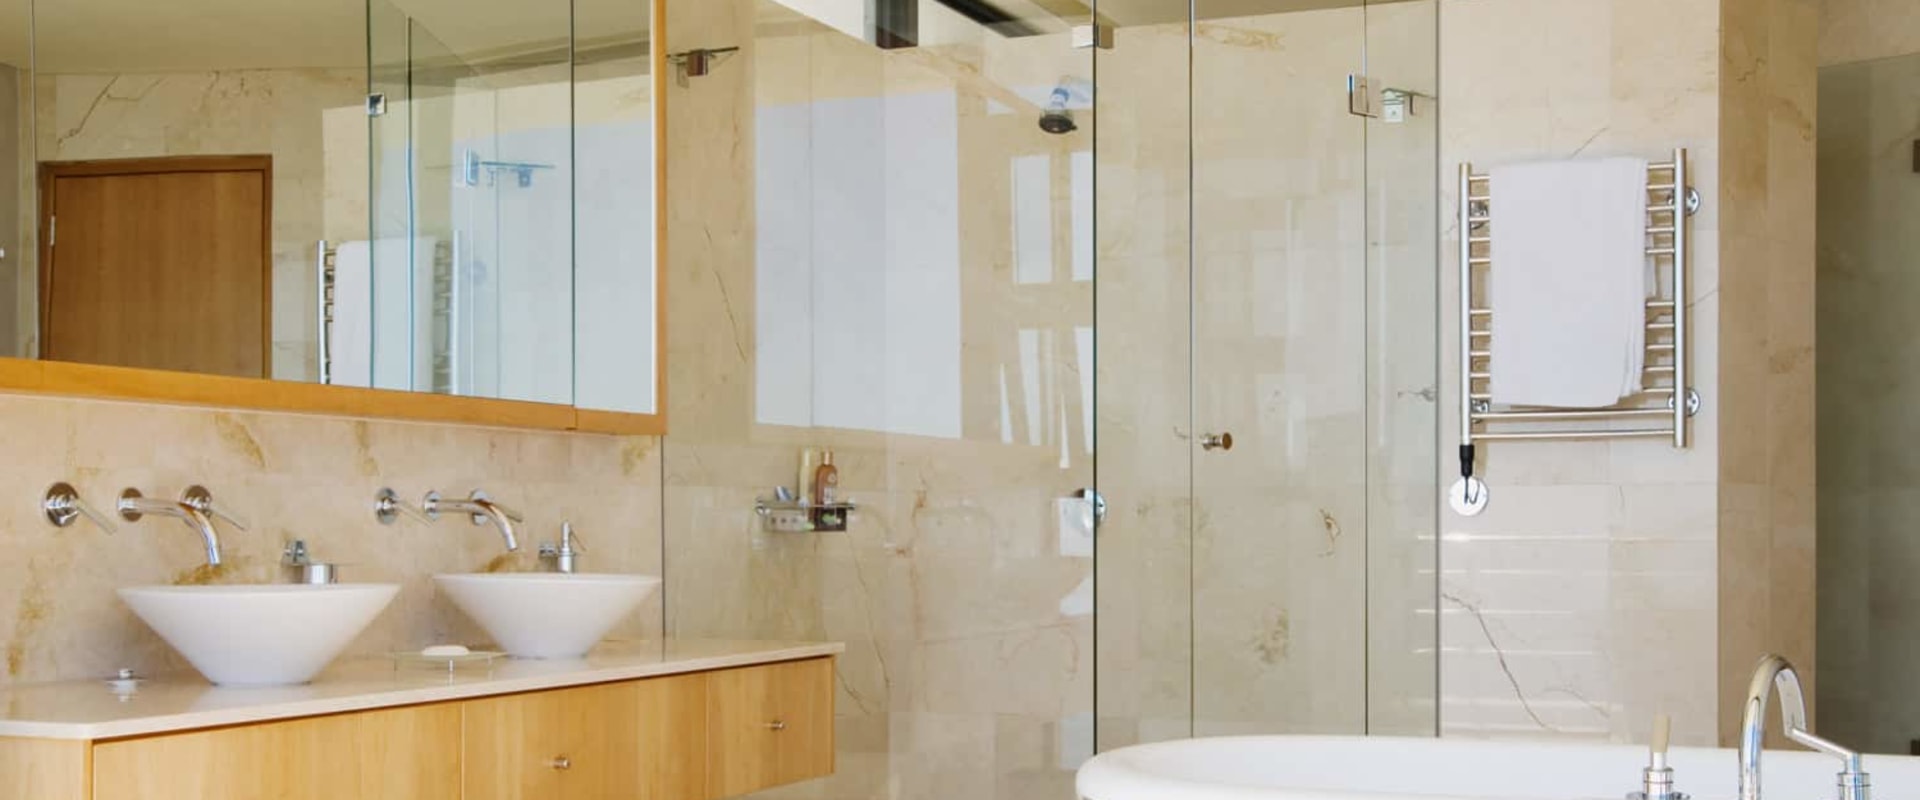 Do Frameless Shower Doors Increase Home Value?